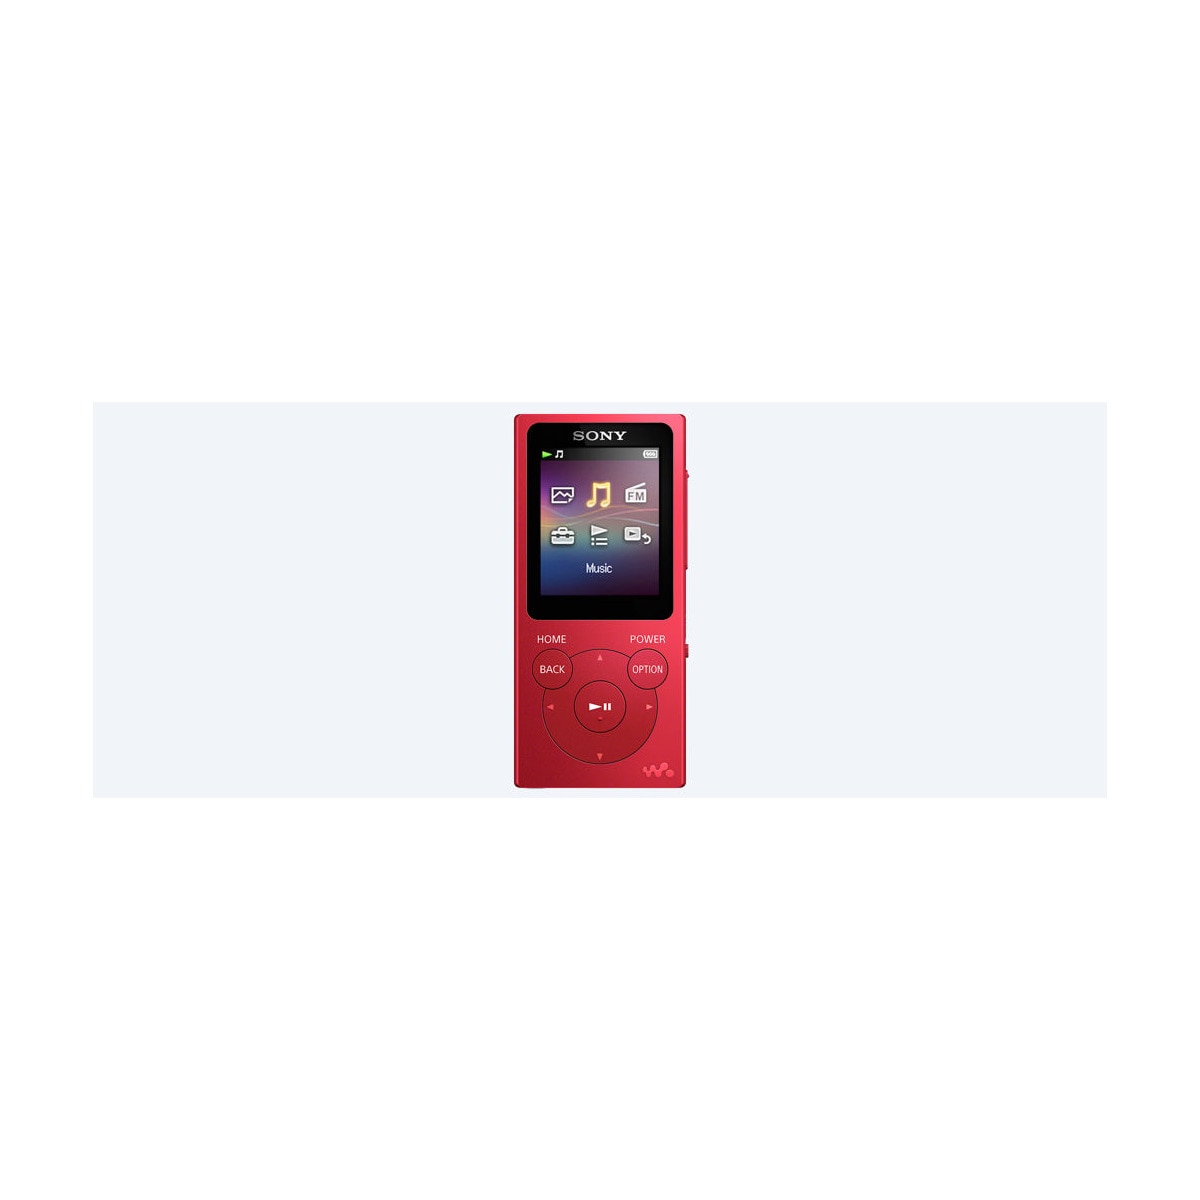 Reproductor MP4 Sony NW-E394 Rojo de 8 GB con radio FM